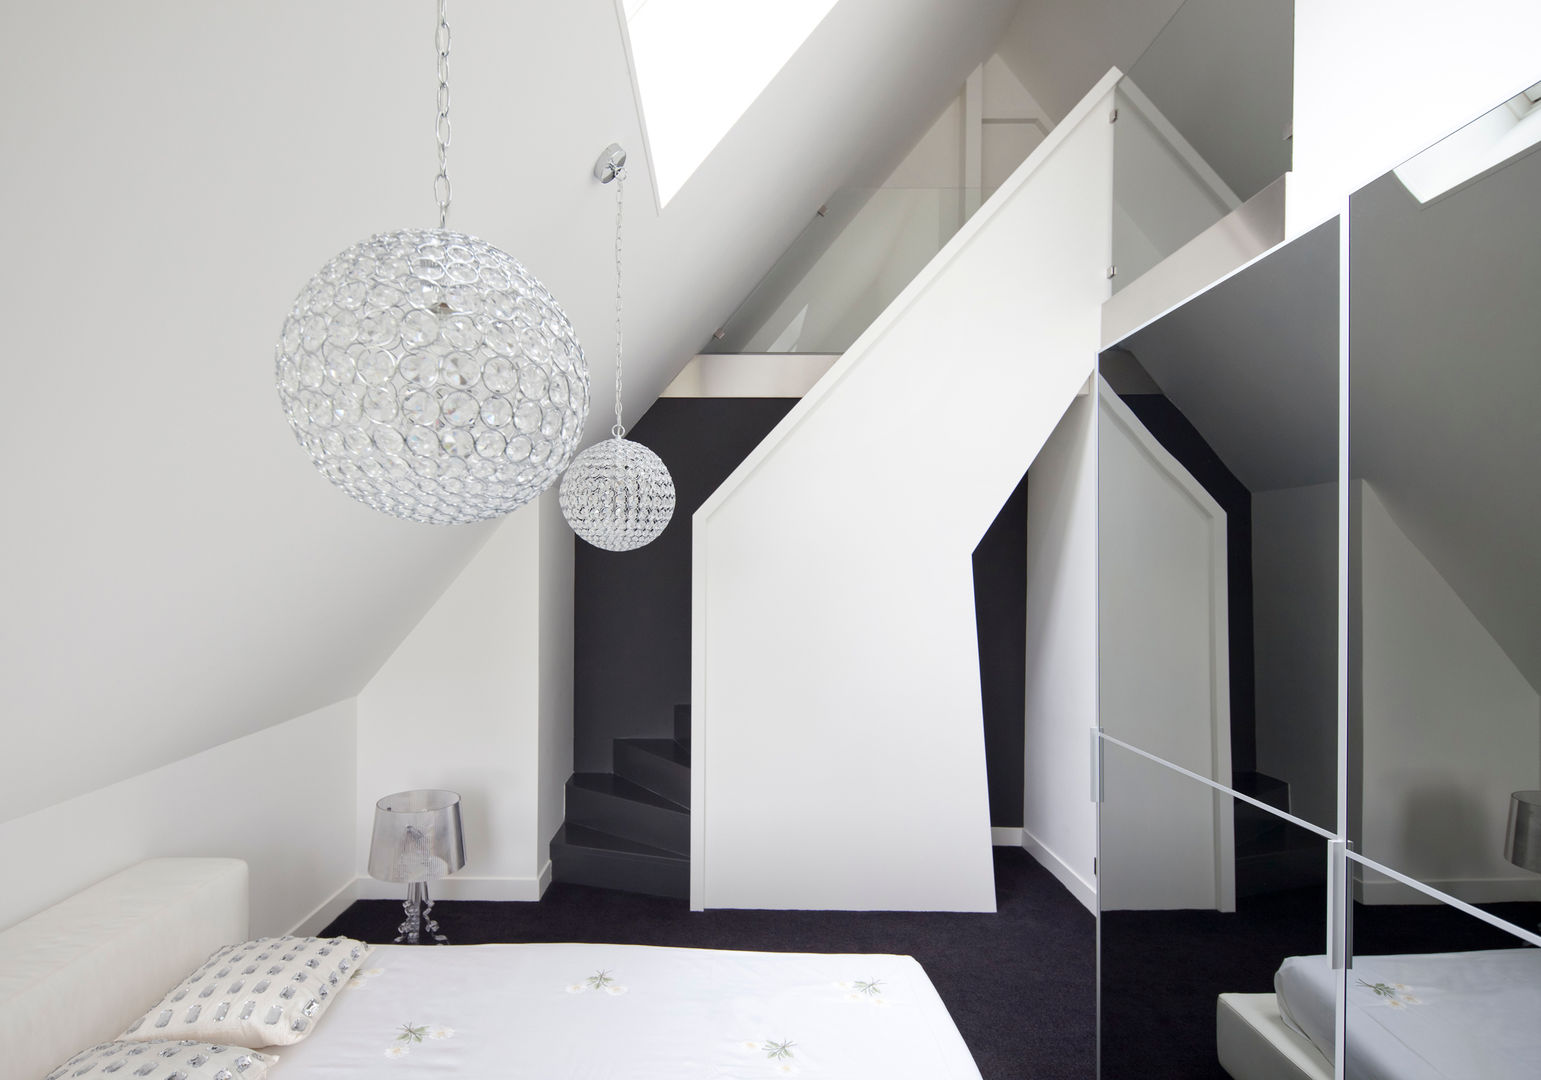 Omgeving & functionaliteit verbonden in een verbazingwekkende villa in Vinkeveen, MEF Architect MEF Architect Dormitorios de estilo moderno